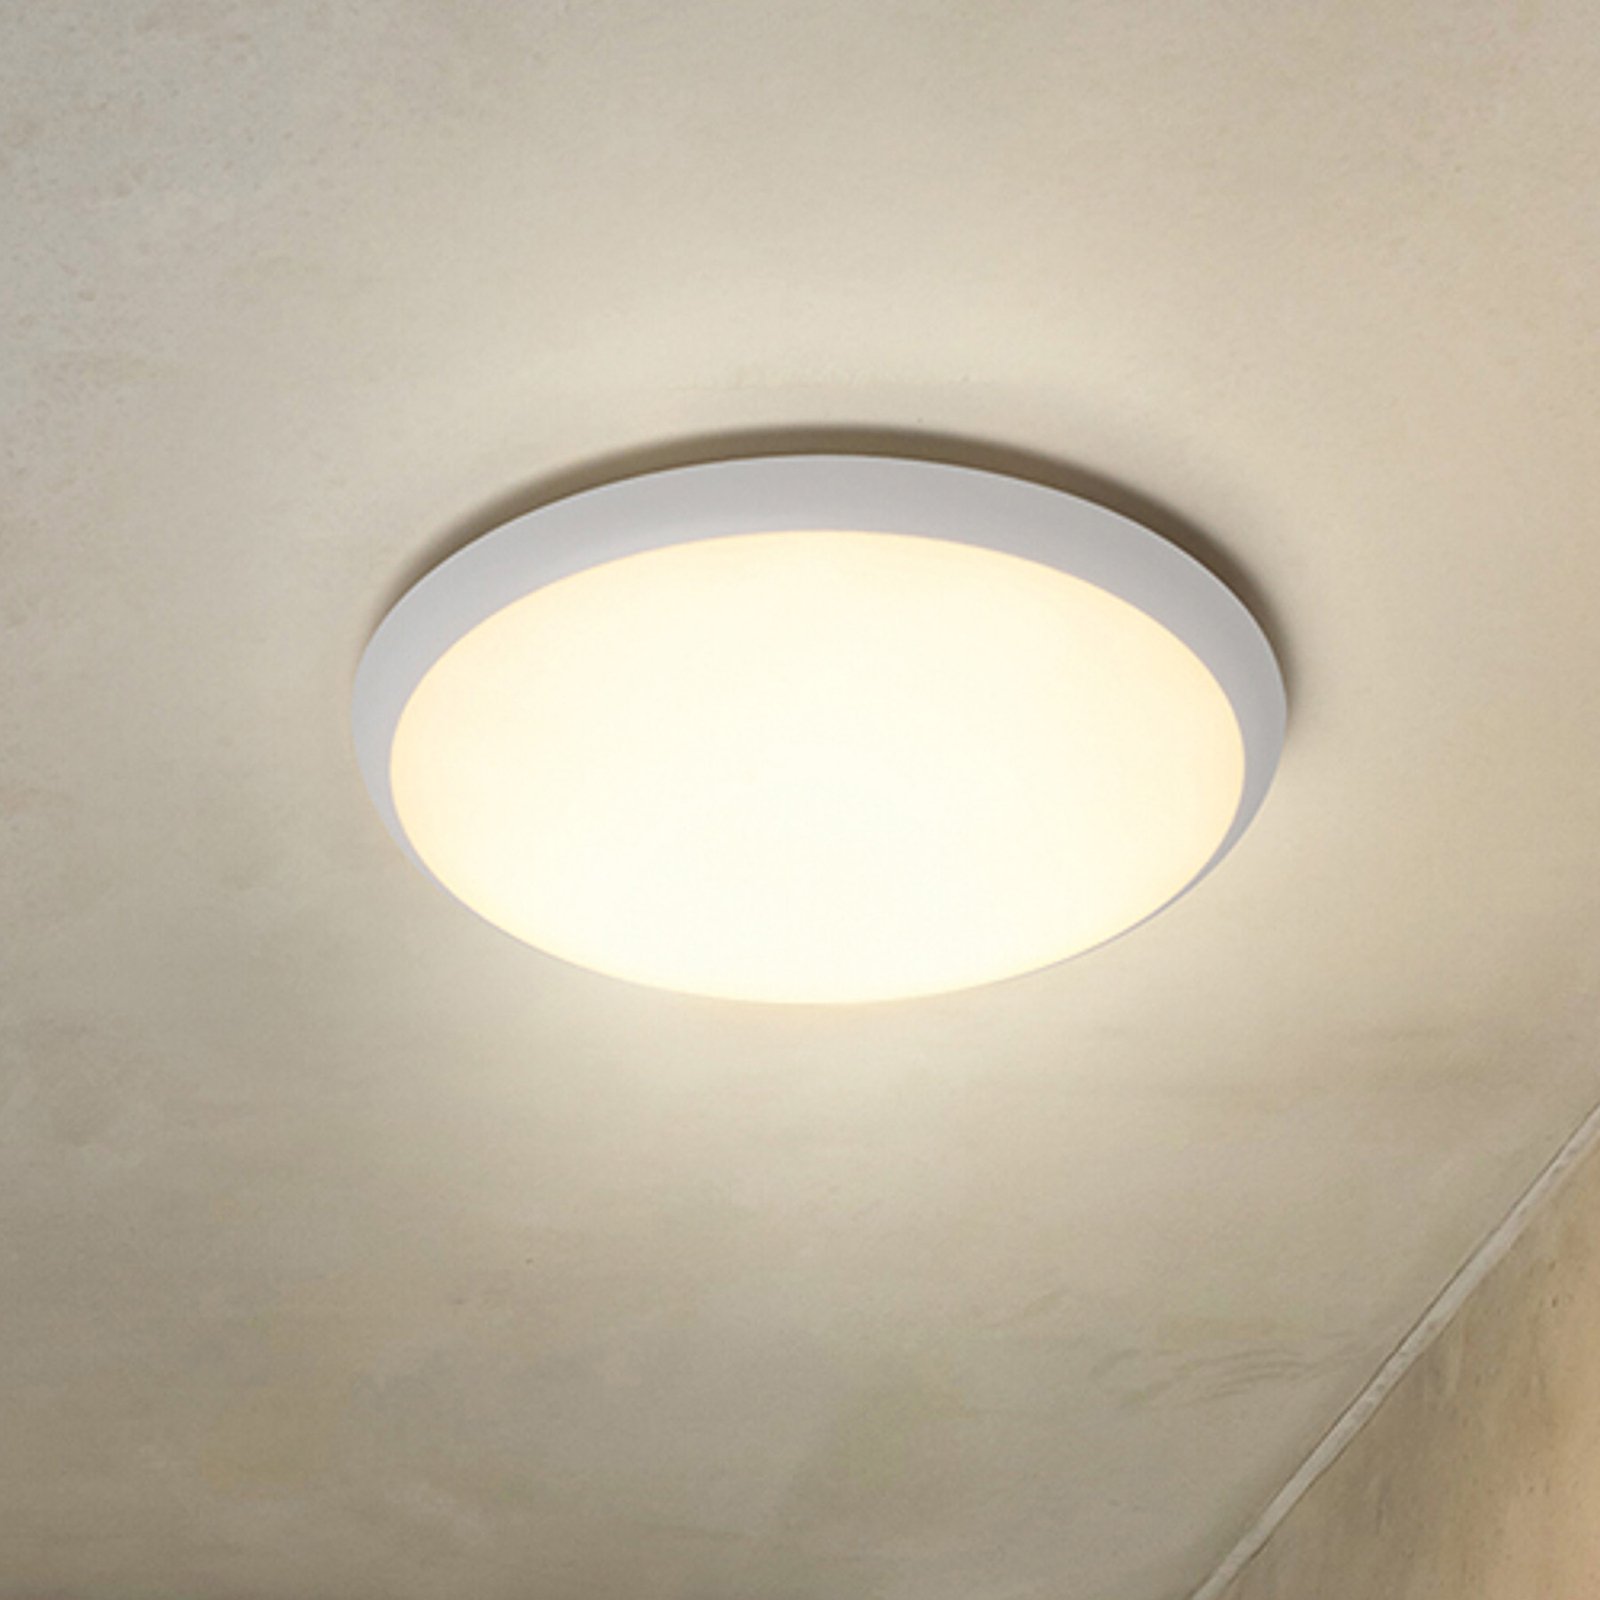 RZB HB 502 LED ceiling light, Ø40cm, 30W, 3,000K